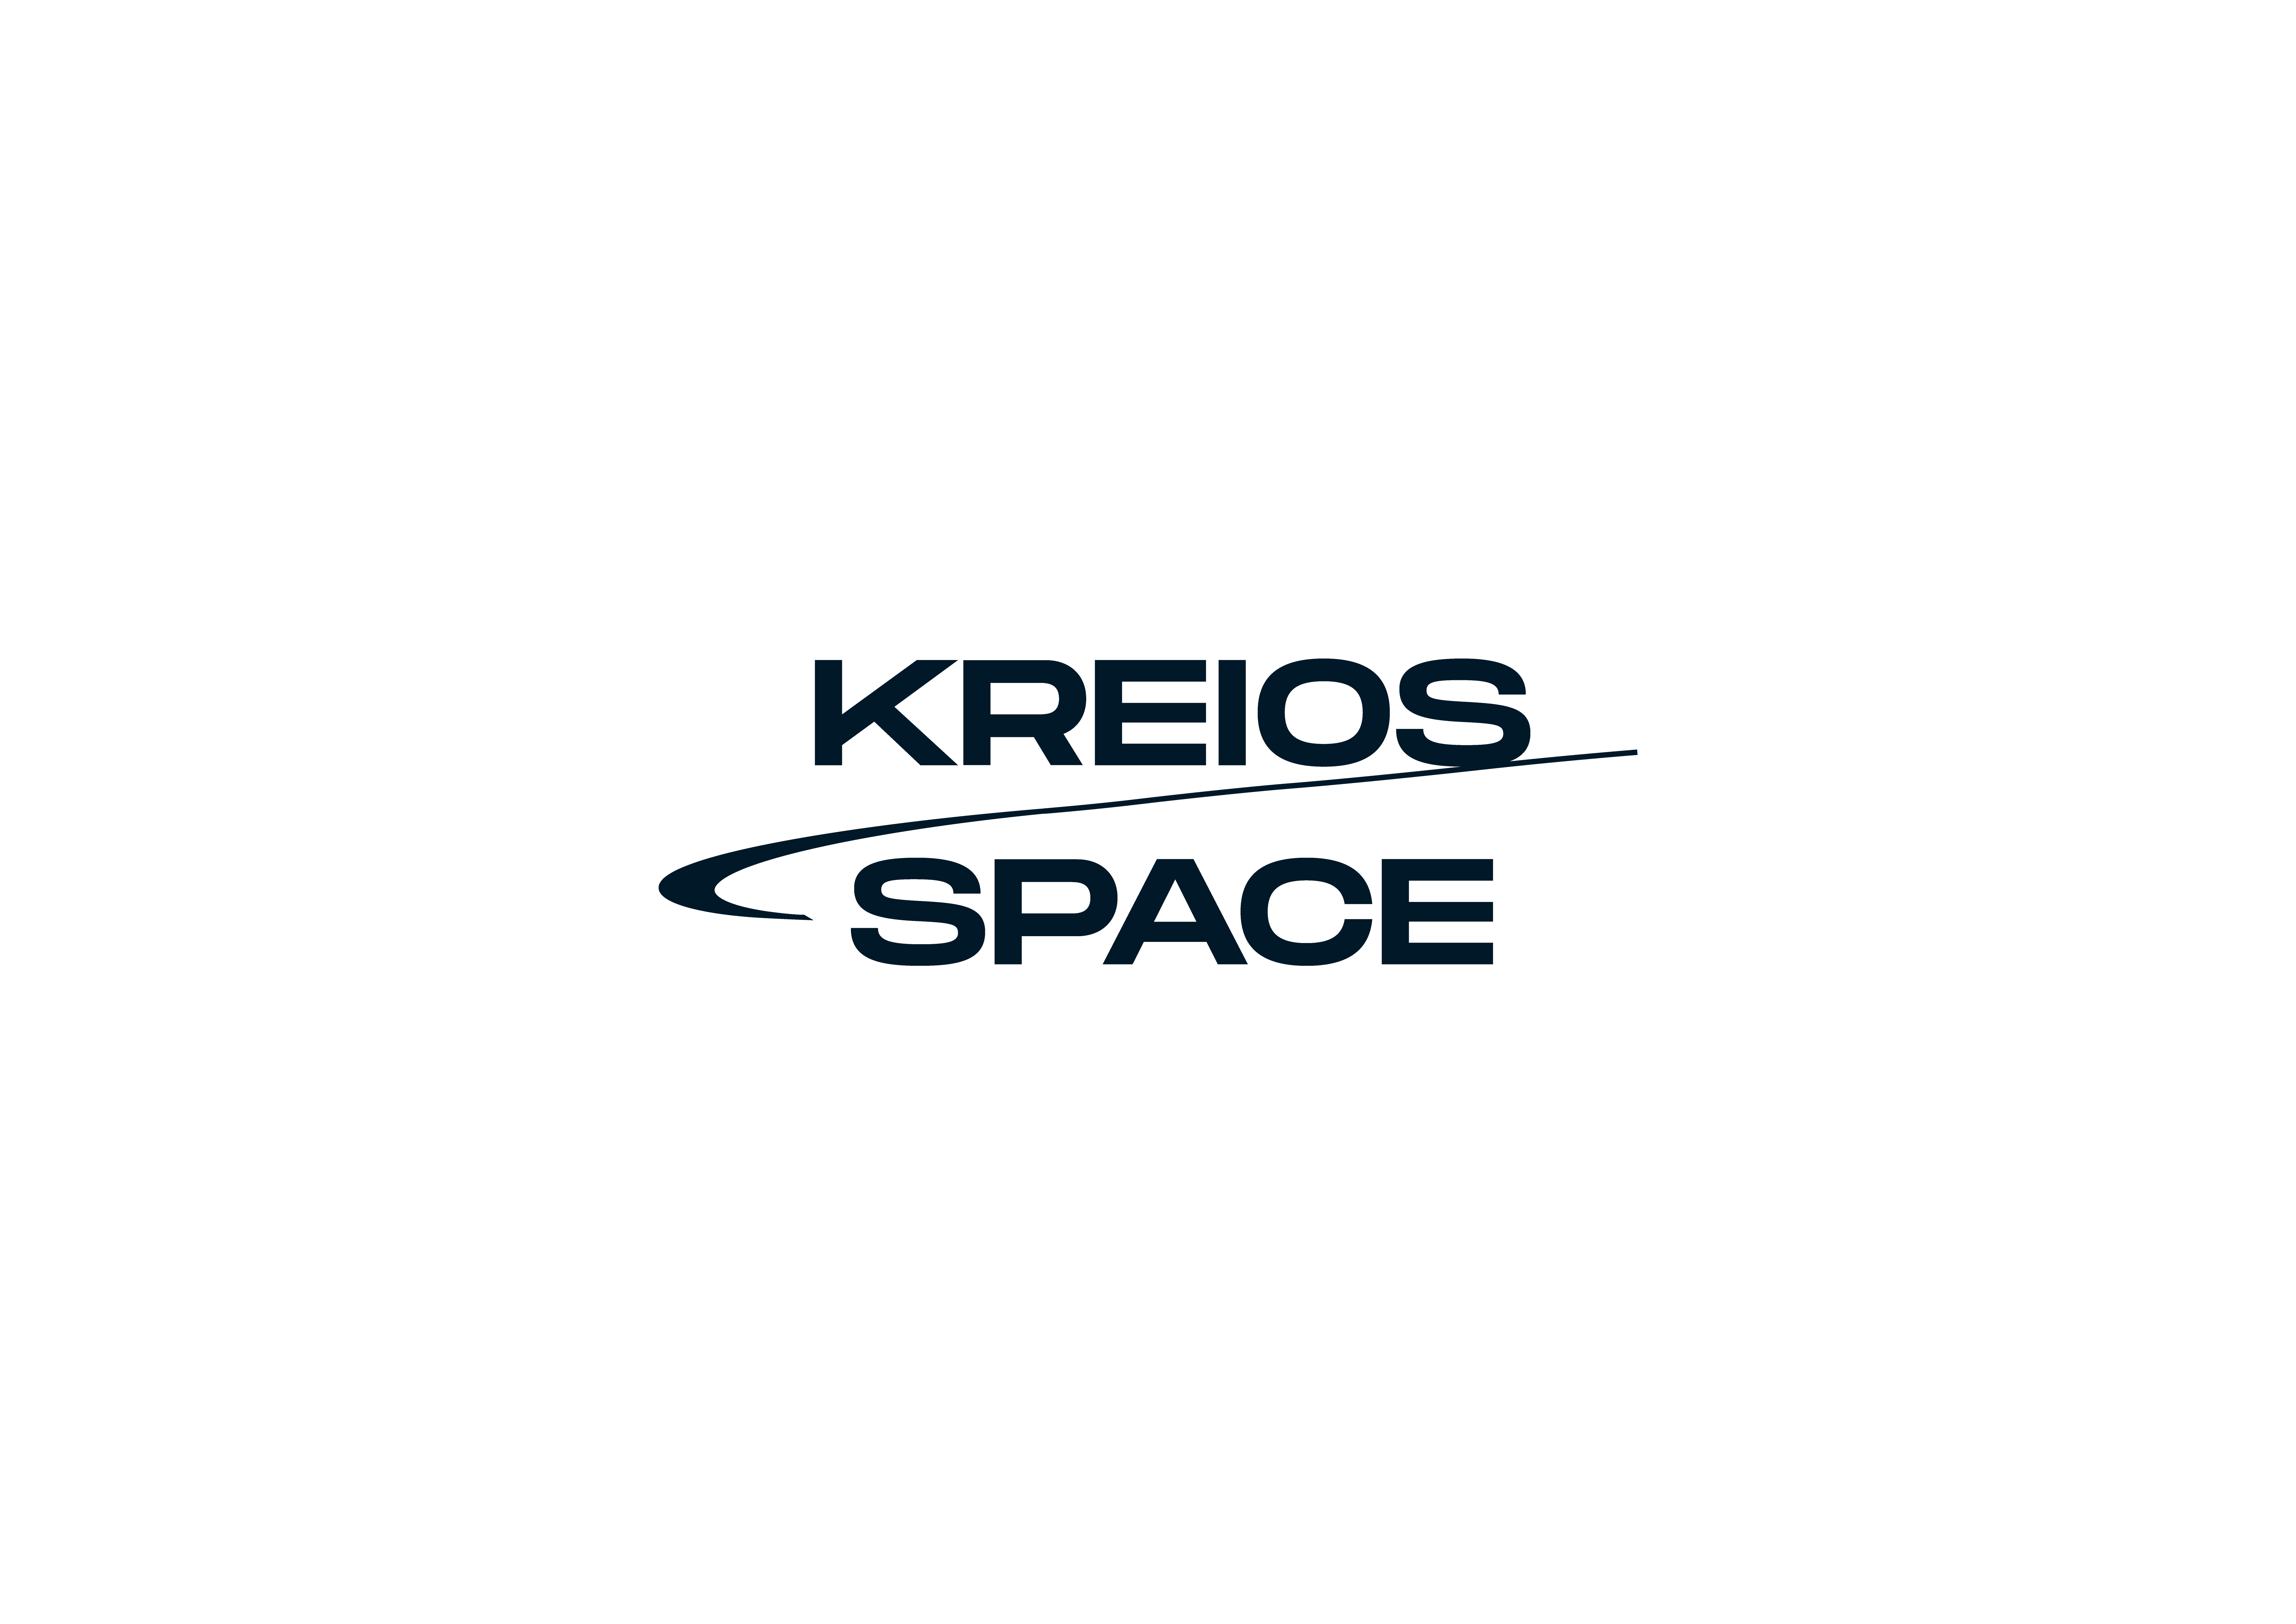 Logo kreios space